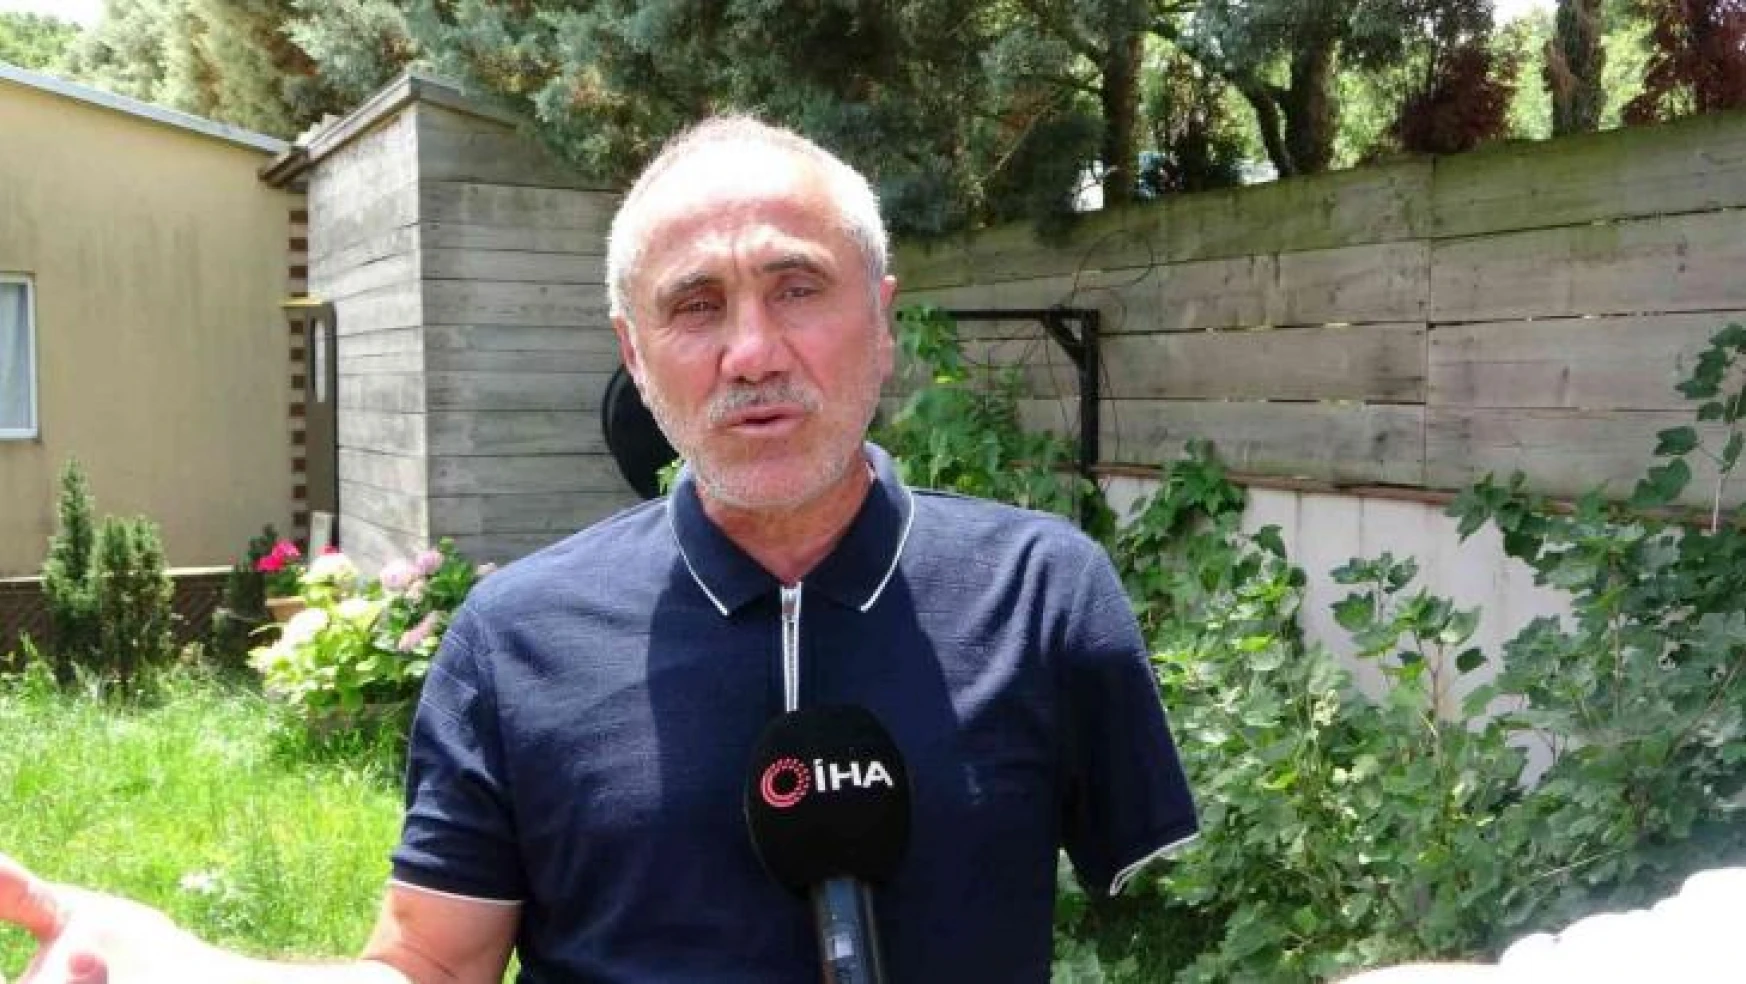 15 Temmuz gazisi Üzeyir Civan: 'Giden bir kolumdu ama kalan vatanımdı'